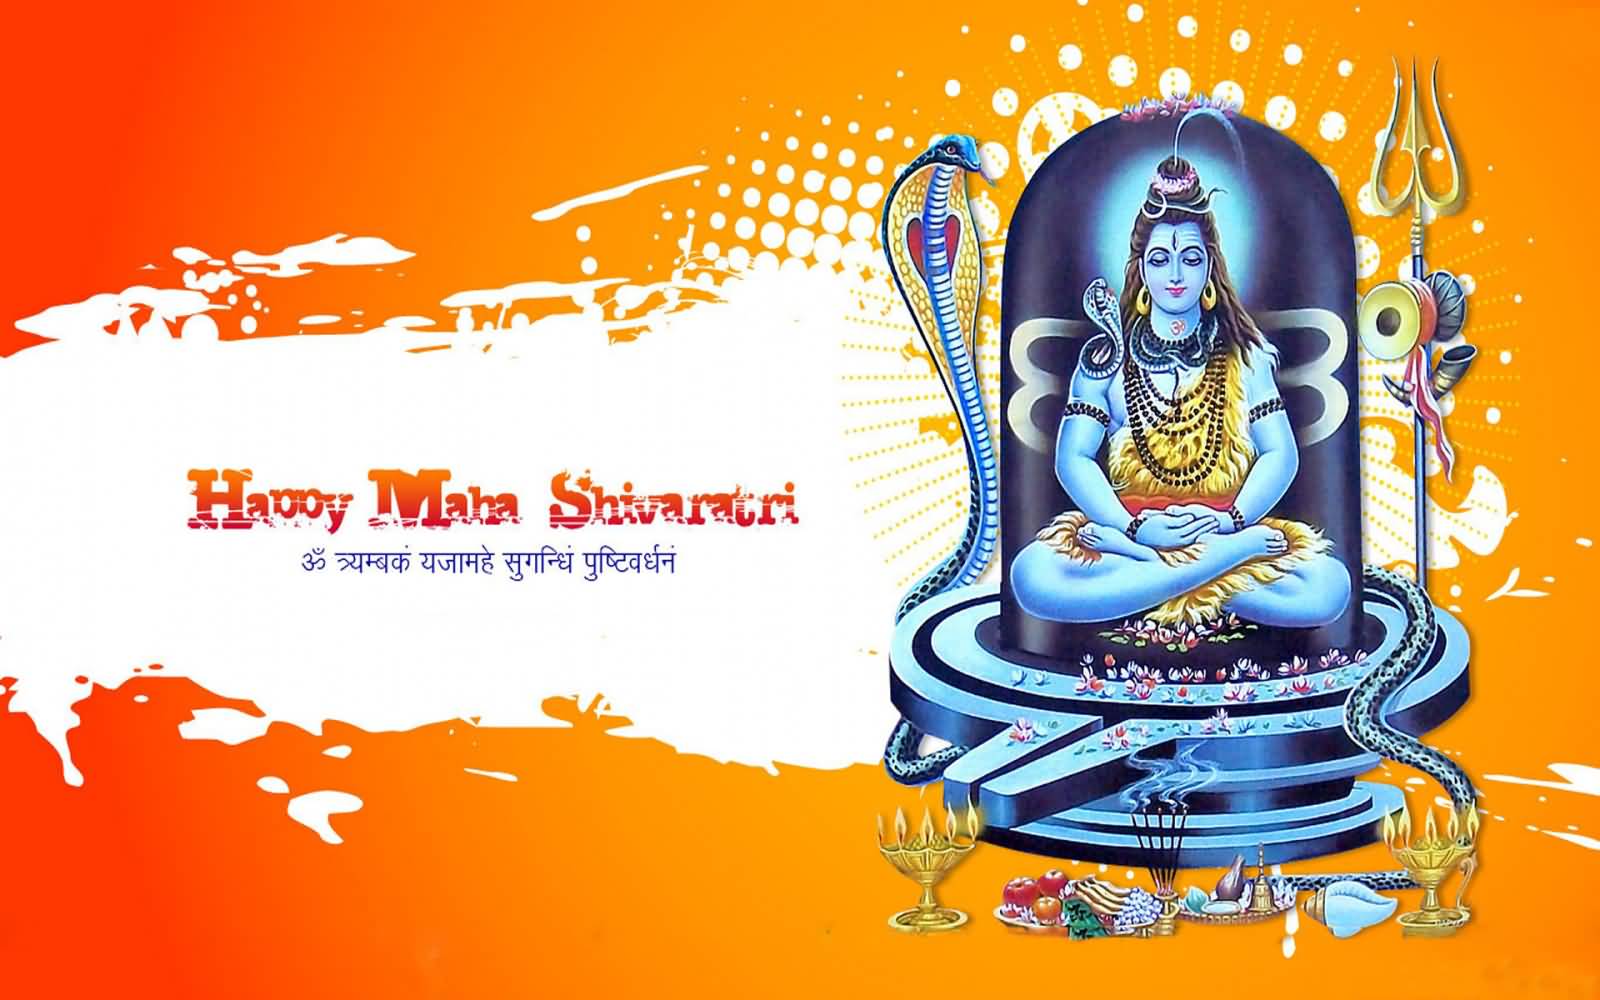 Happy Maha Shivratri 2017 Hd Wallpaper - Maha Shivratri Banner Hd -  1600x1000 Wallpaper 